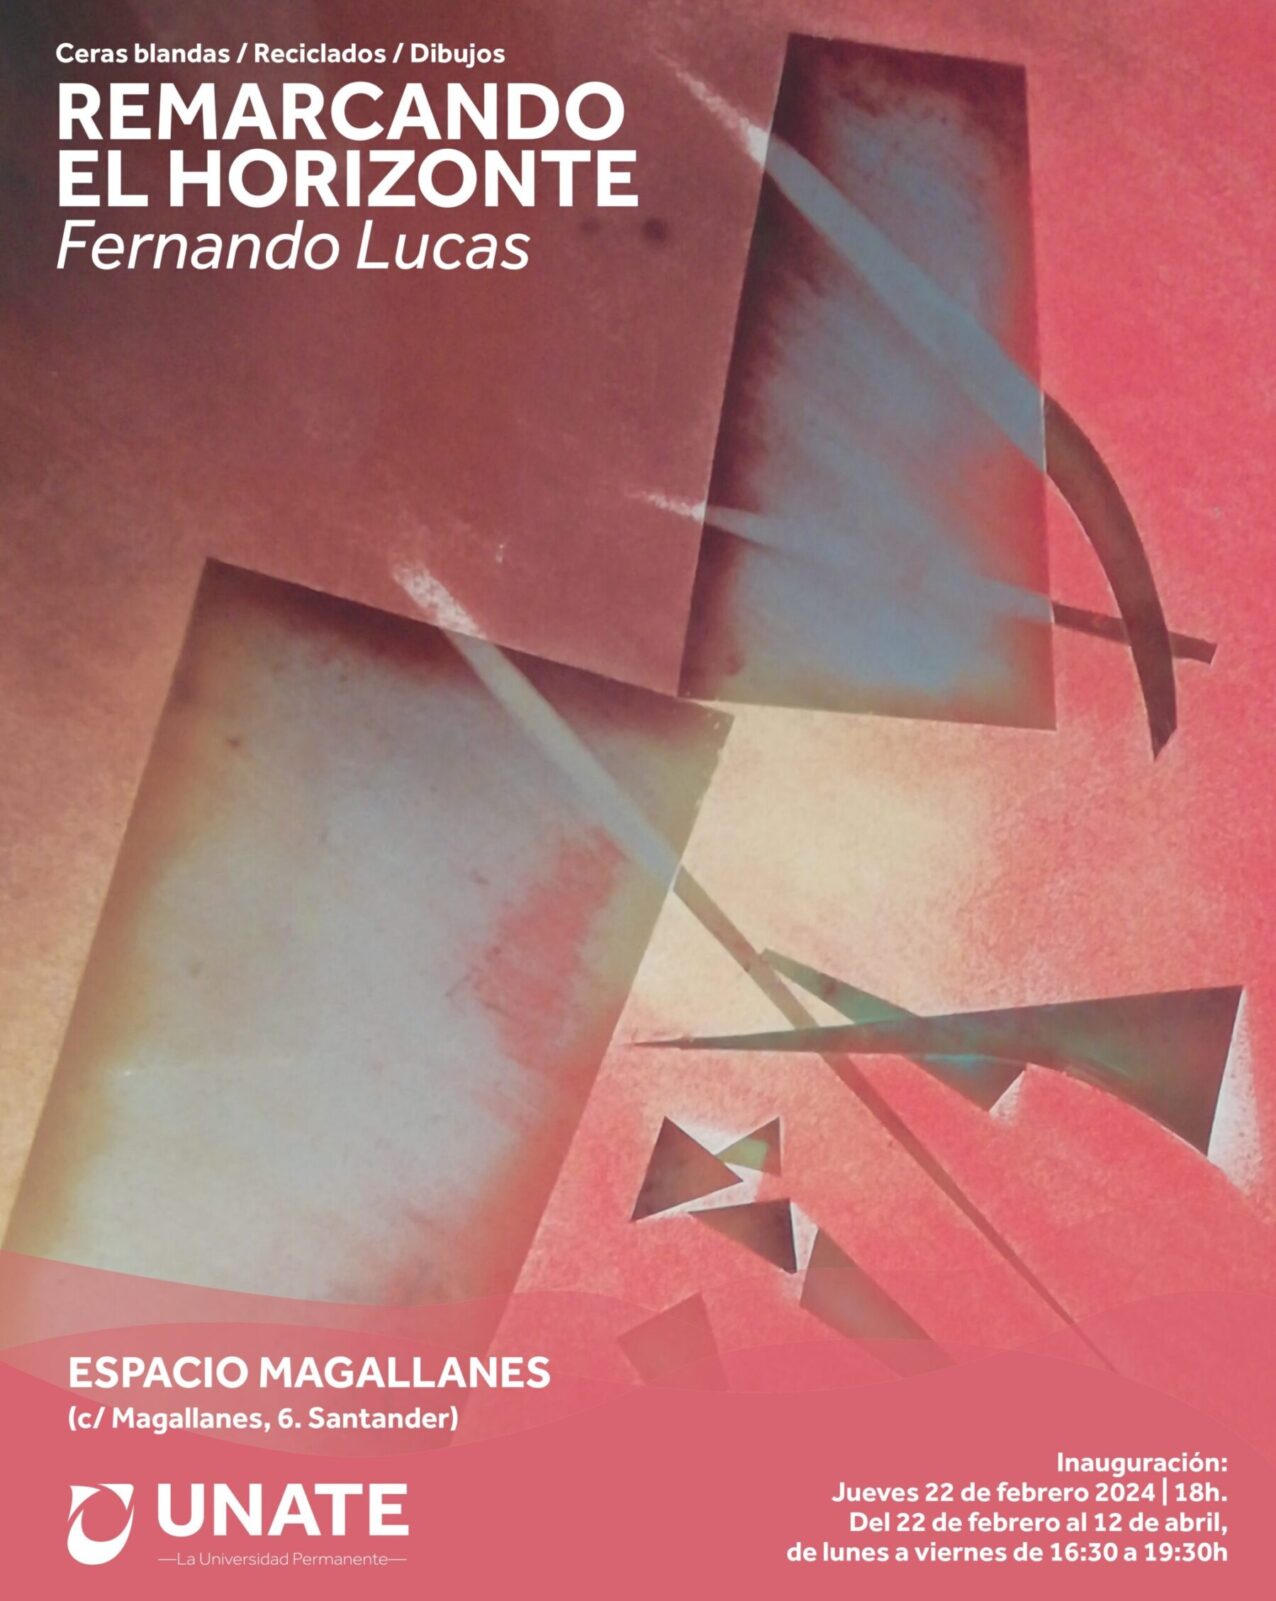 La pintura, los reciclados y los dibujos de Fernando Lucas remarcan el horizonte de Espacio Magallanes